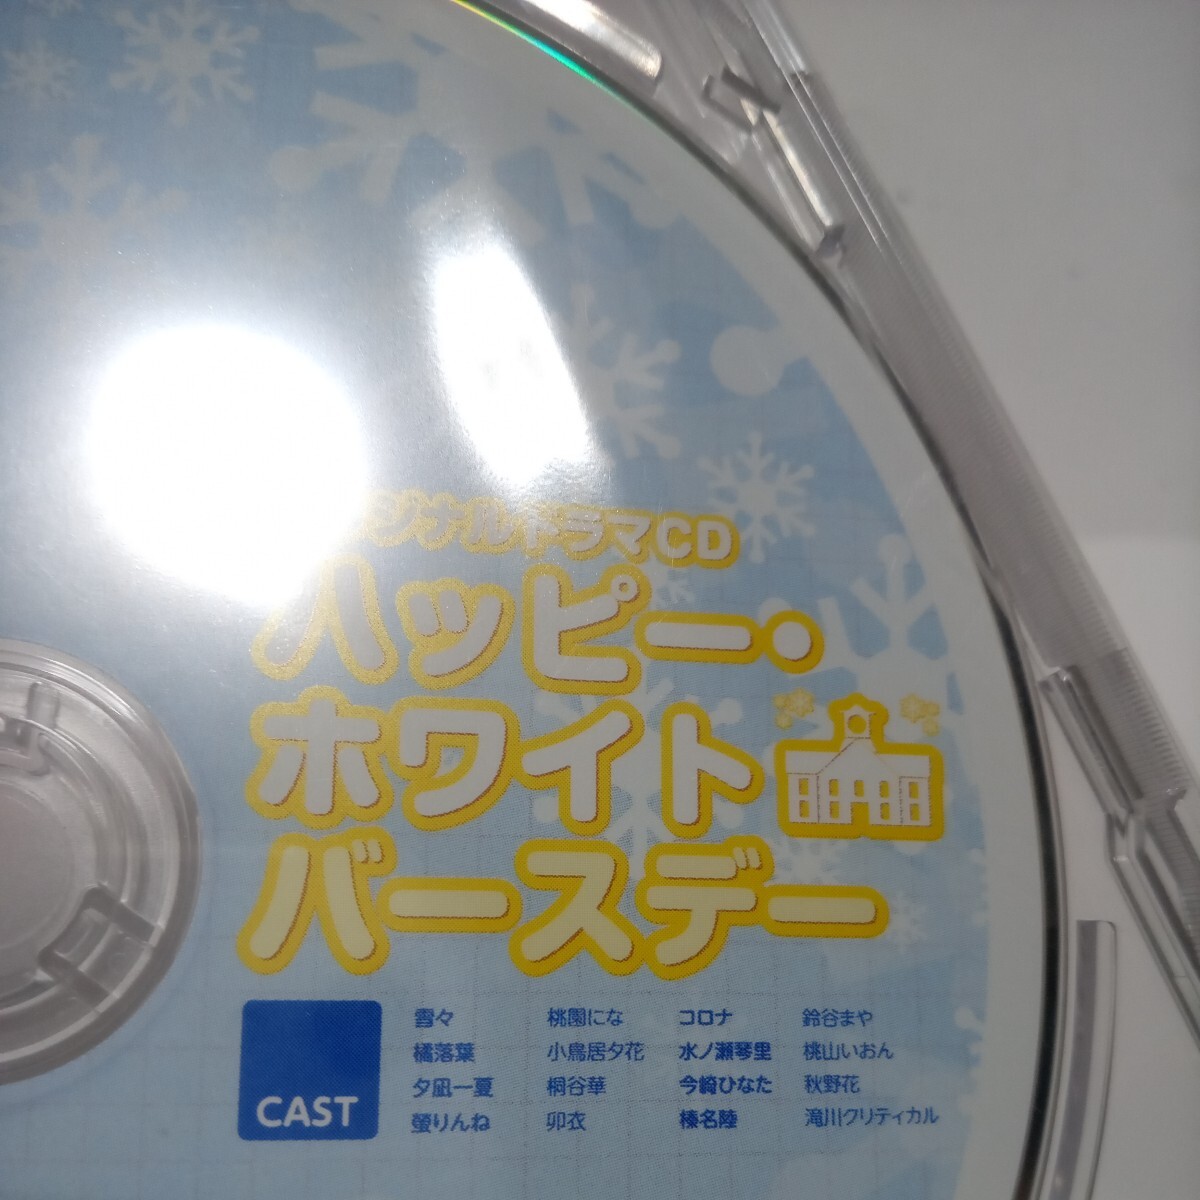 CDドラマ アストラエアの白き永遠の画像2